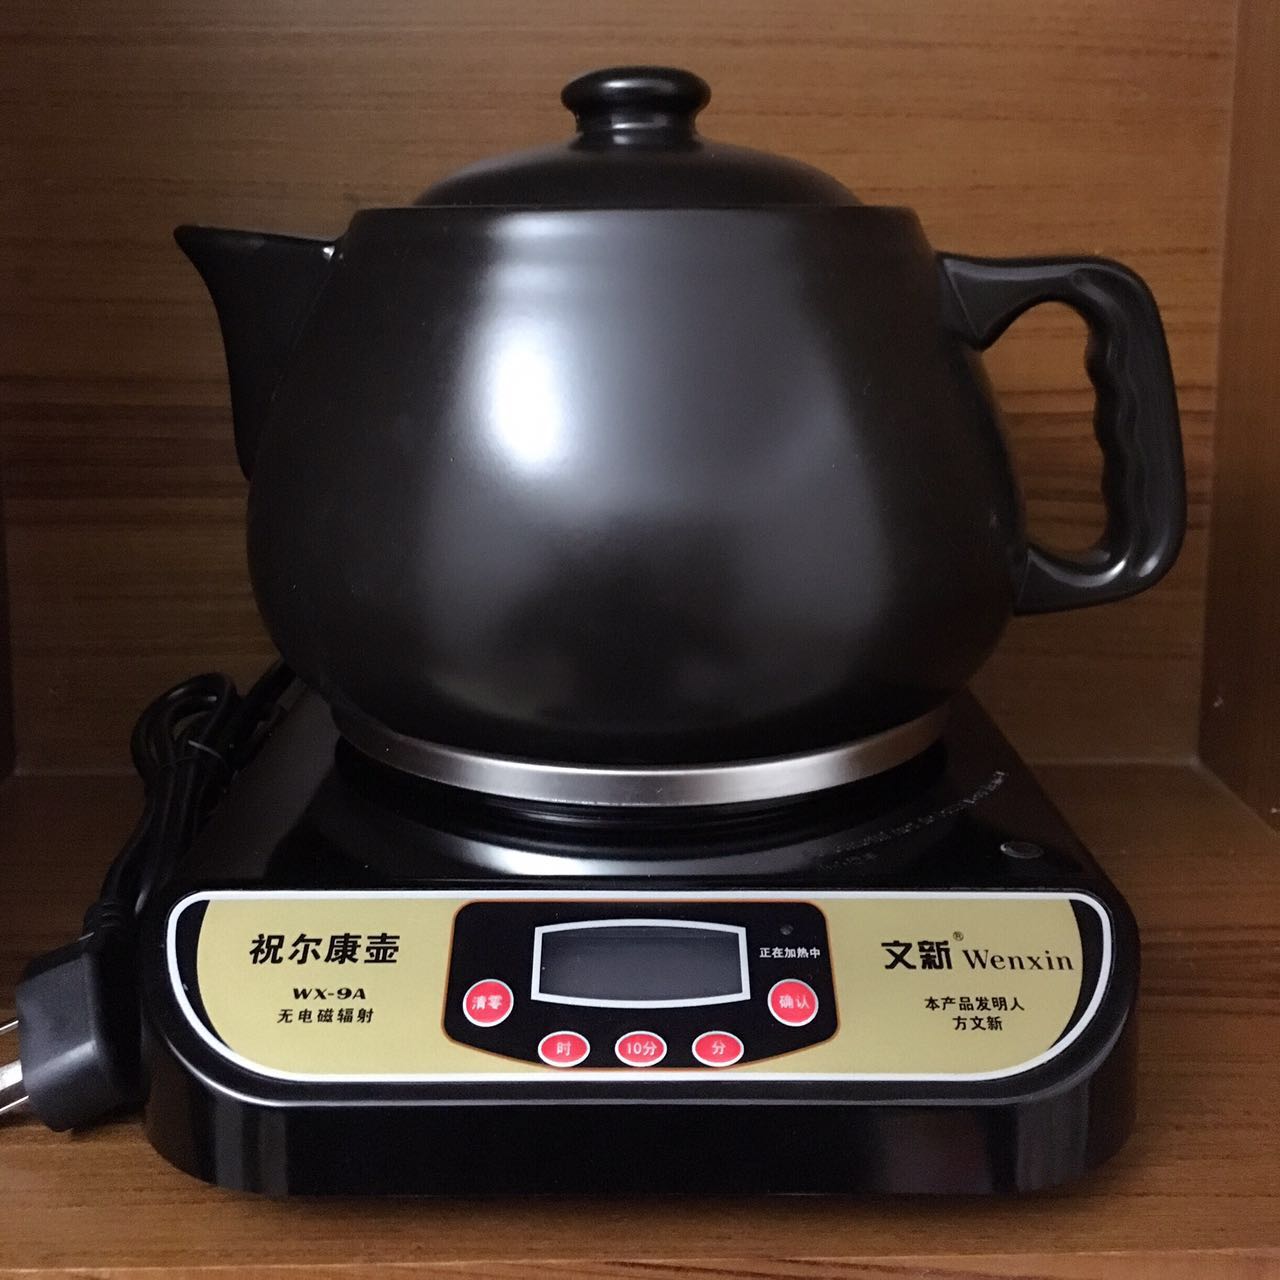 文新祝尔康药壶全自动分体式多功能陶瓷煲汤WX-9A保健养生煎药壶